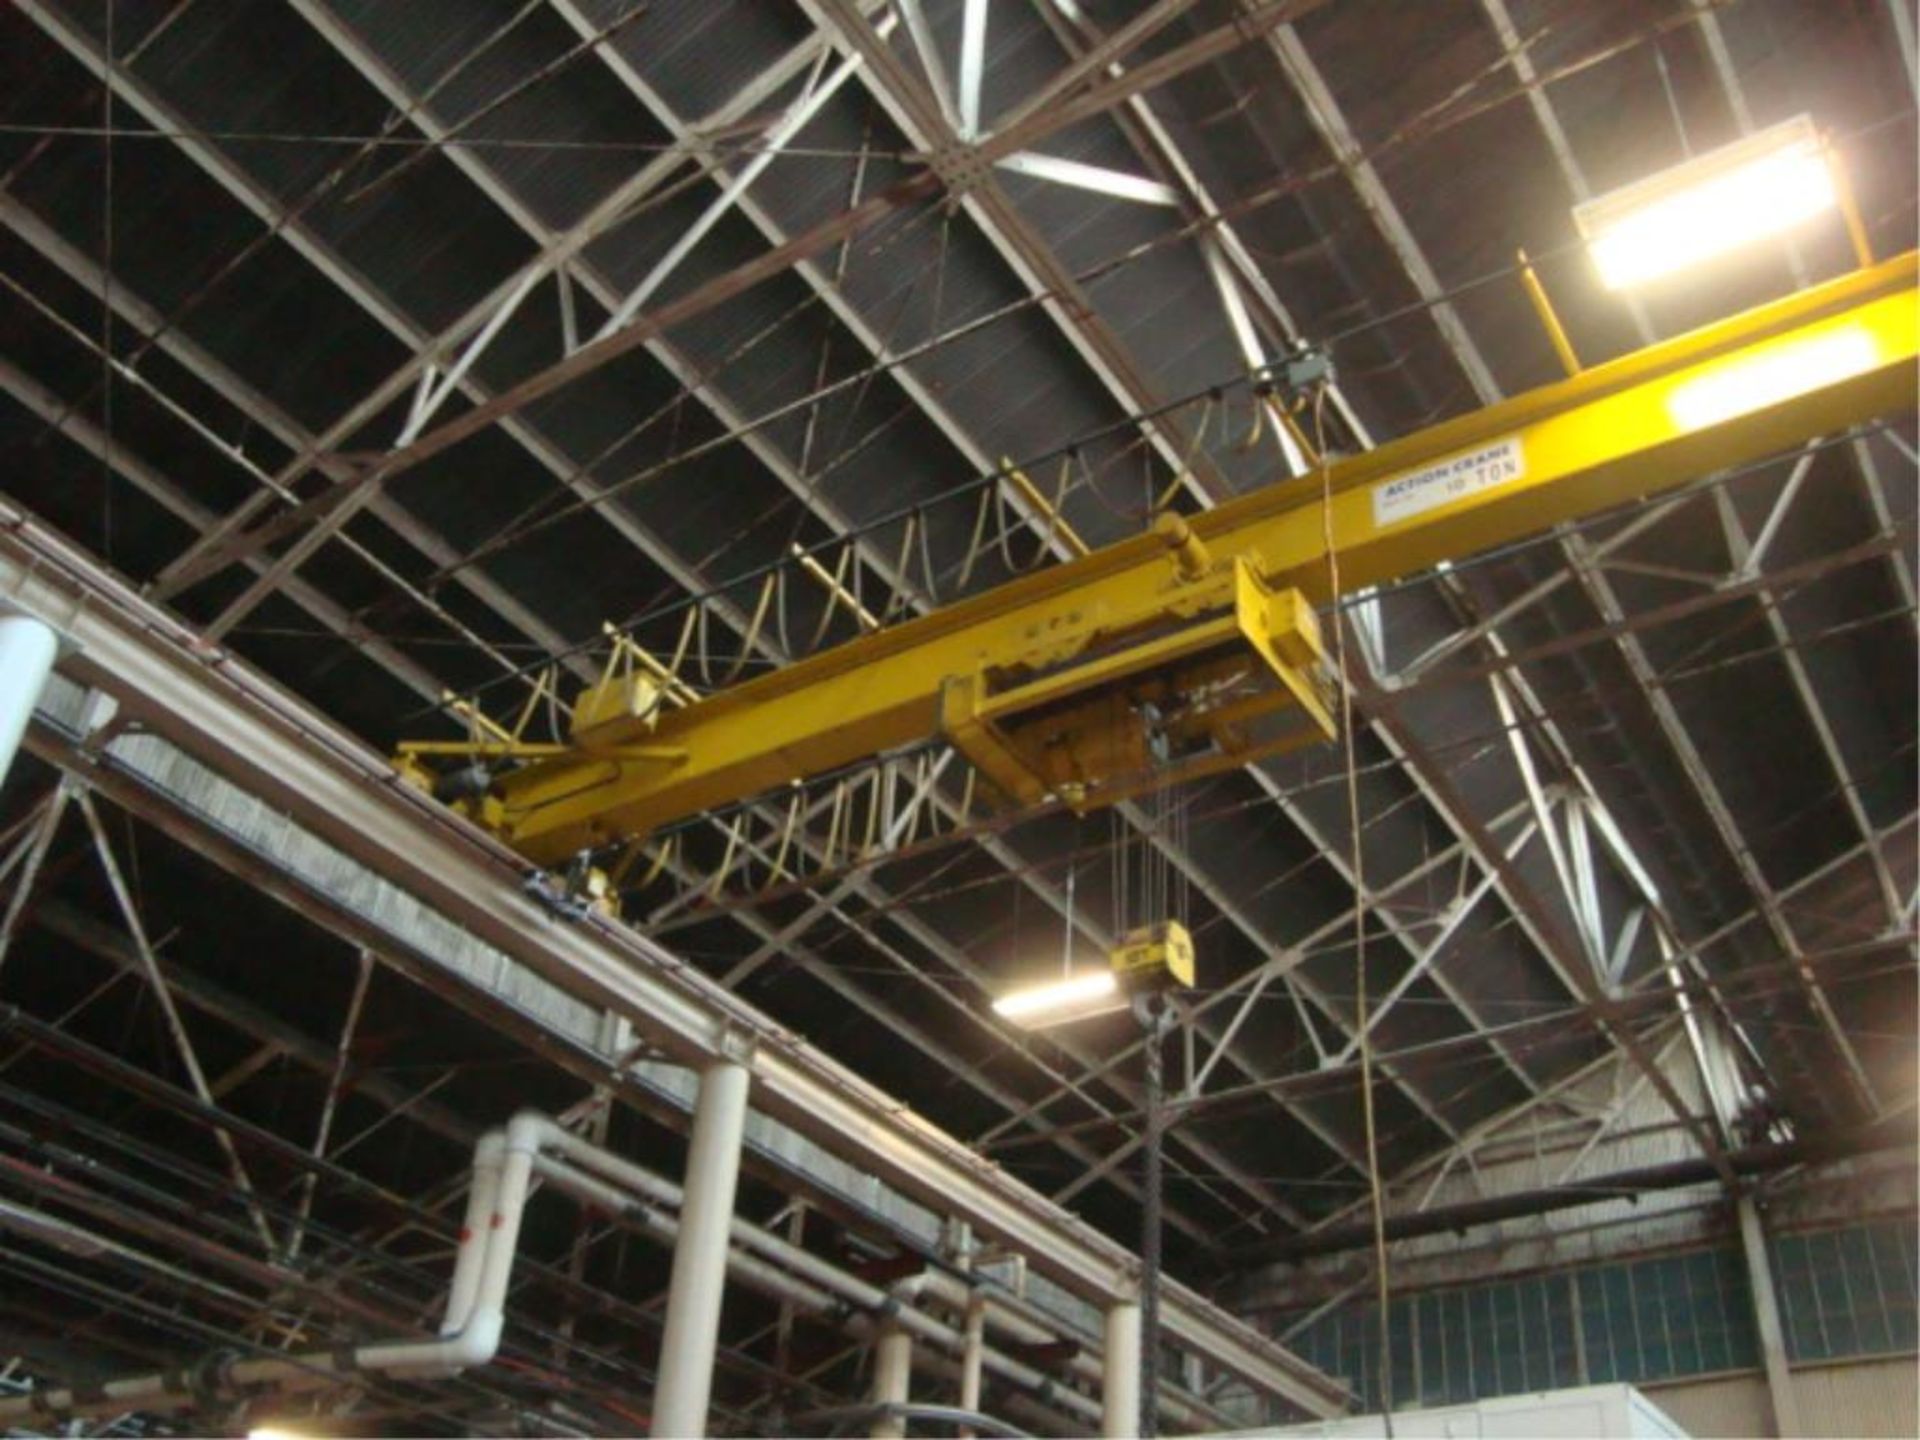 10-Ton Capacity Overhead Bridge Crane - Image 5 of 10